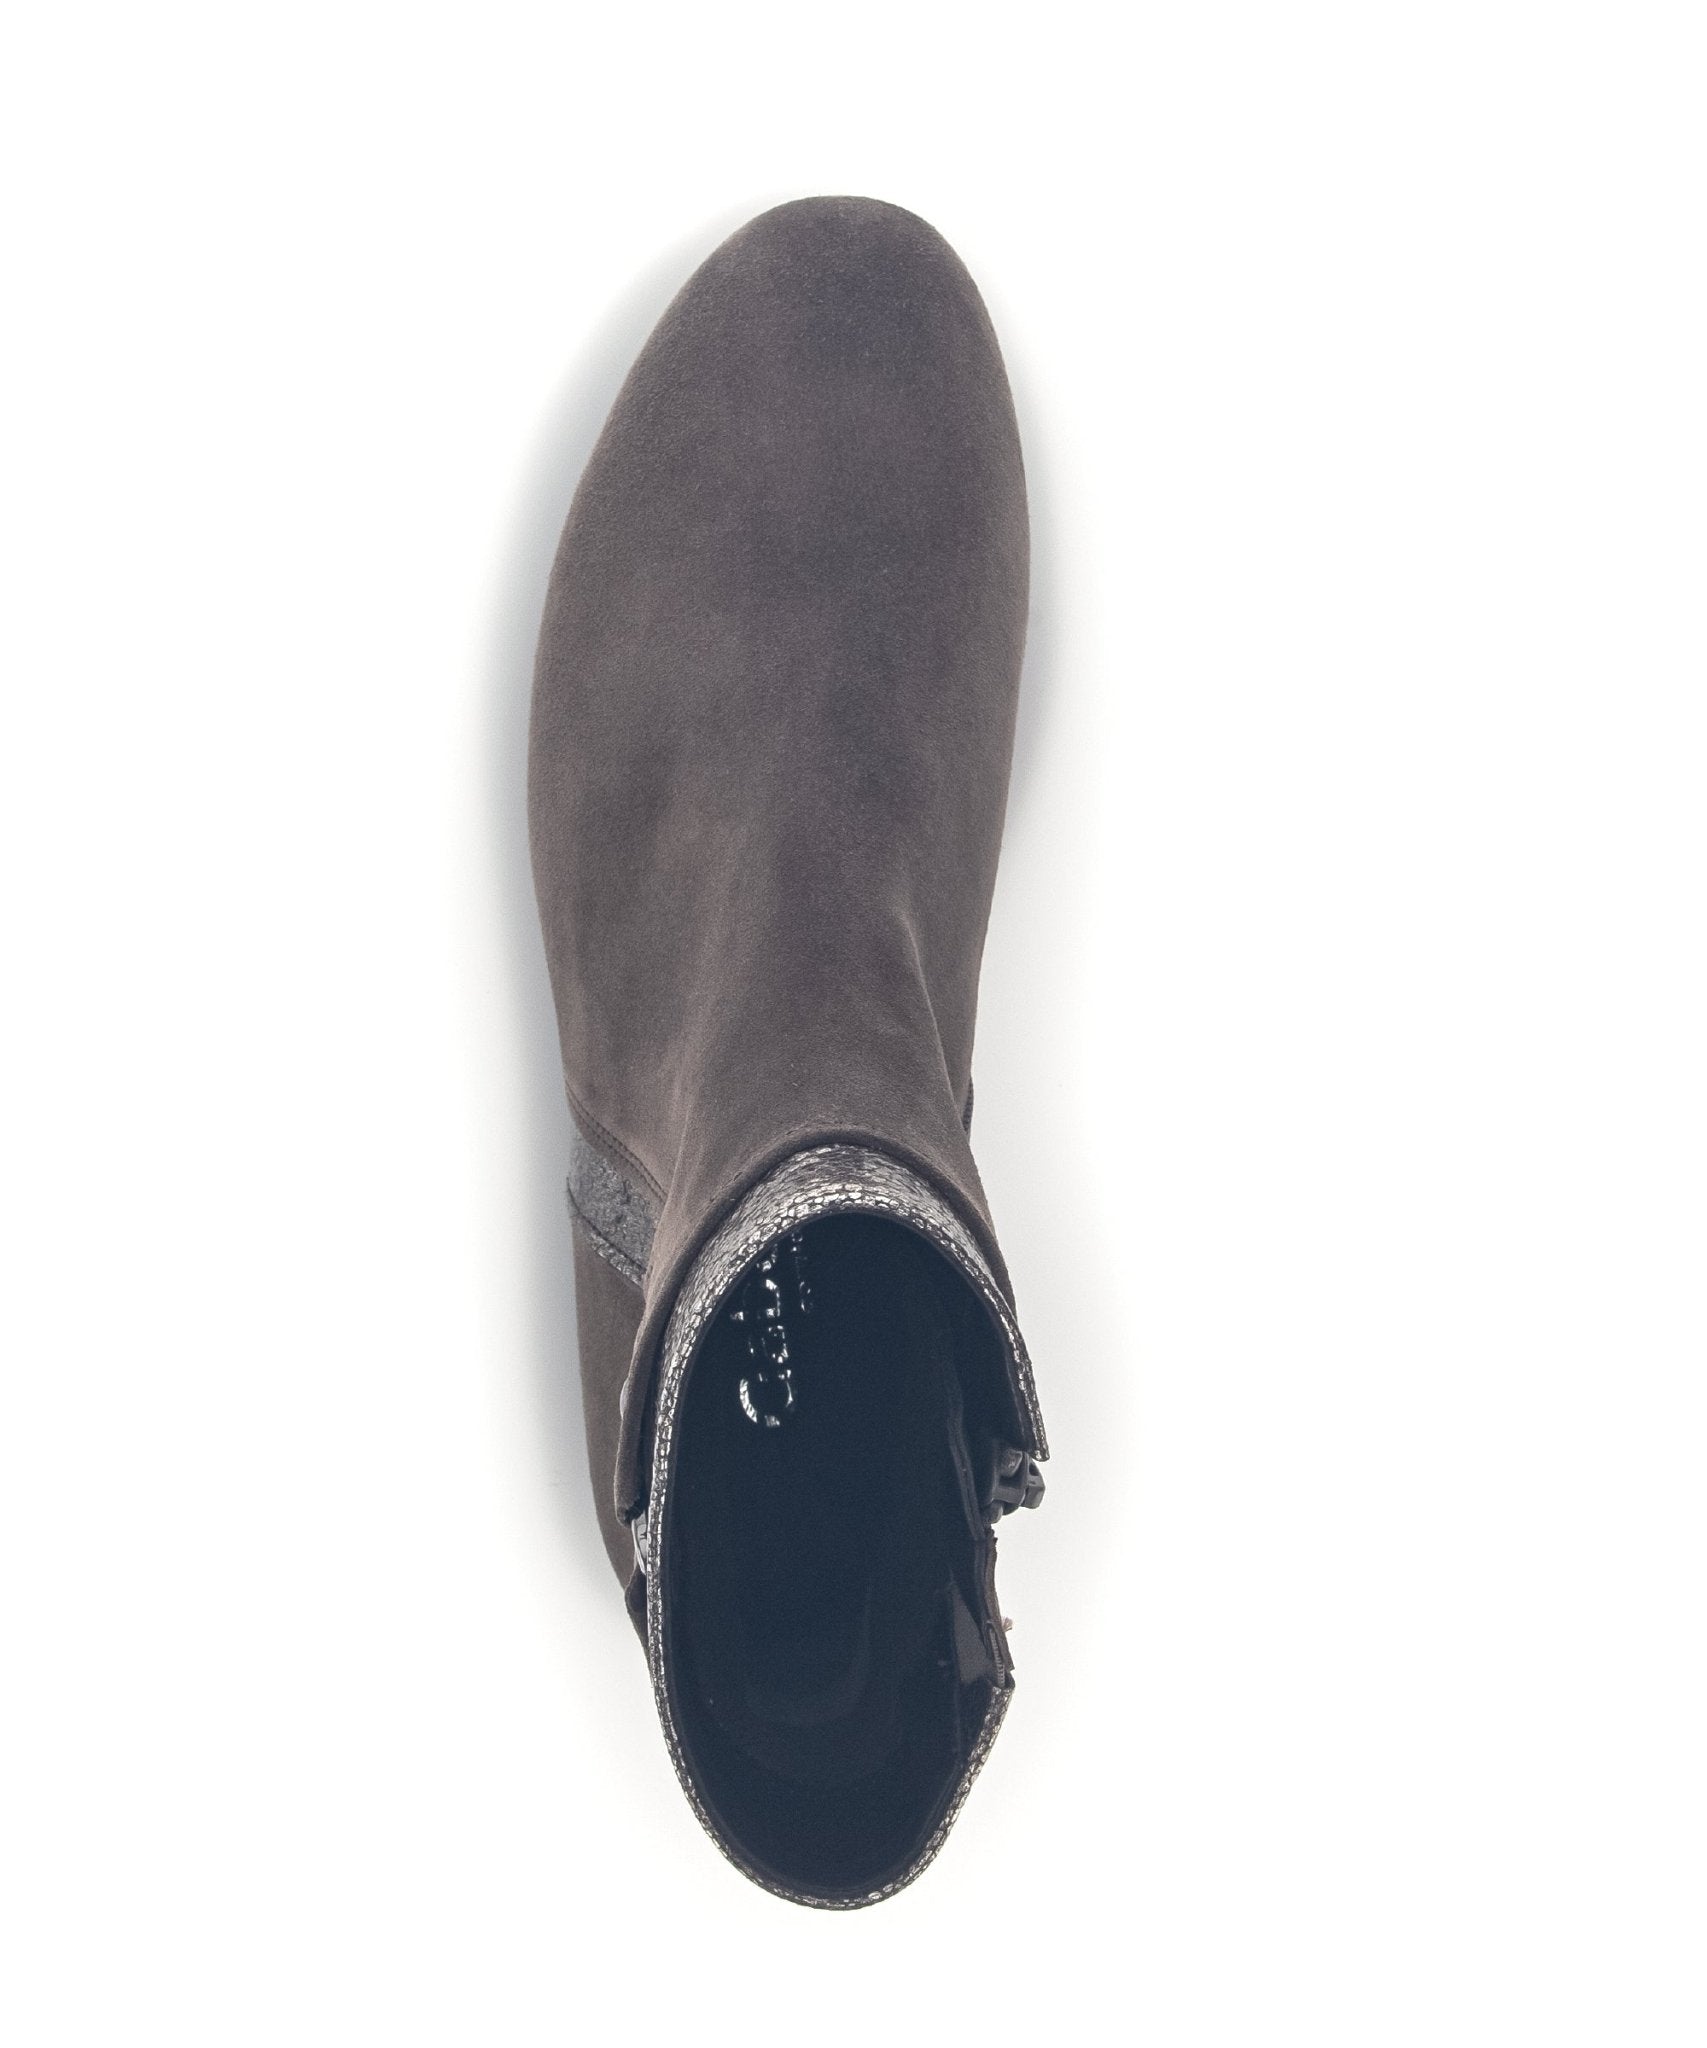 '32.713.30' women's boot - Grey - Chaplinshoes'32.713.30' women's boot - GreyGabor